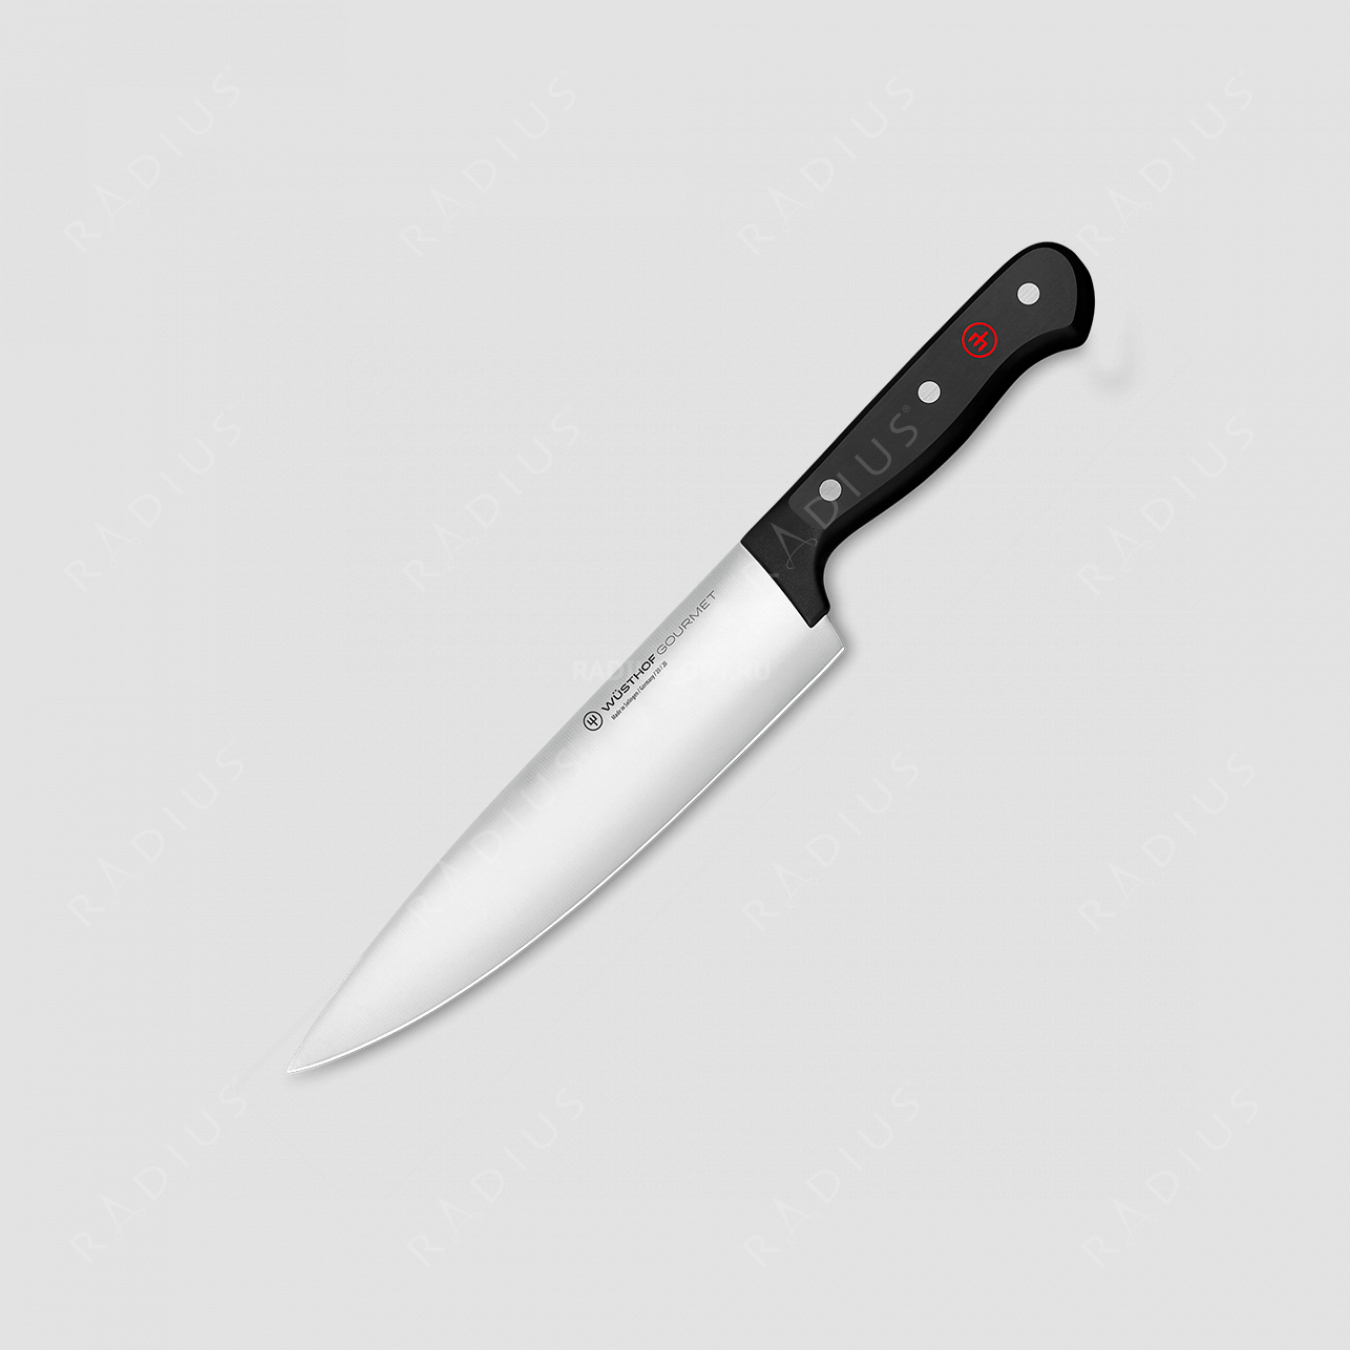 Профессиональный поварской кухонный нож 20 см, серия Gourmet, WUESTHOF, Золинген, Германия